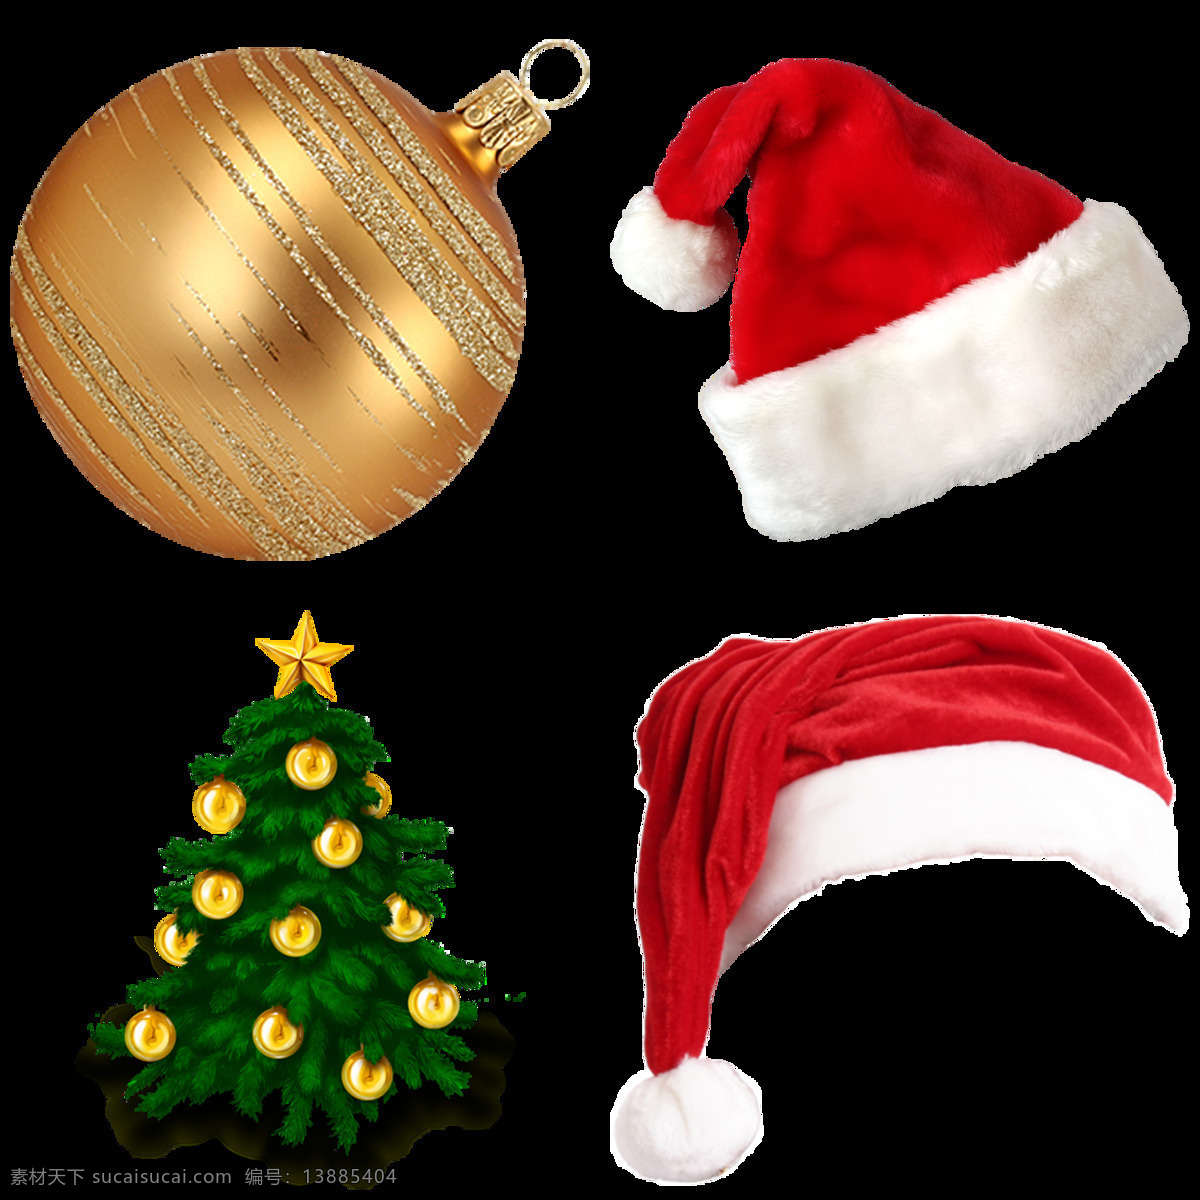 圣诞 帽子 圣诞树 免 抠 透明 图 层 圣诞帽 圣诞礼盒 圣诞礼物 圣诞花环 圣诞袜子 松果 风铃 圣诞球 丝带 节日素材 松枝 松树 圣诞节 装饰 元素